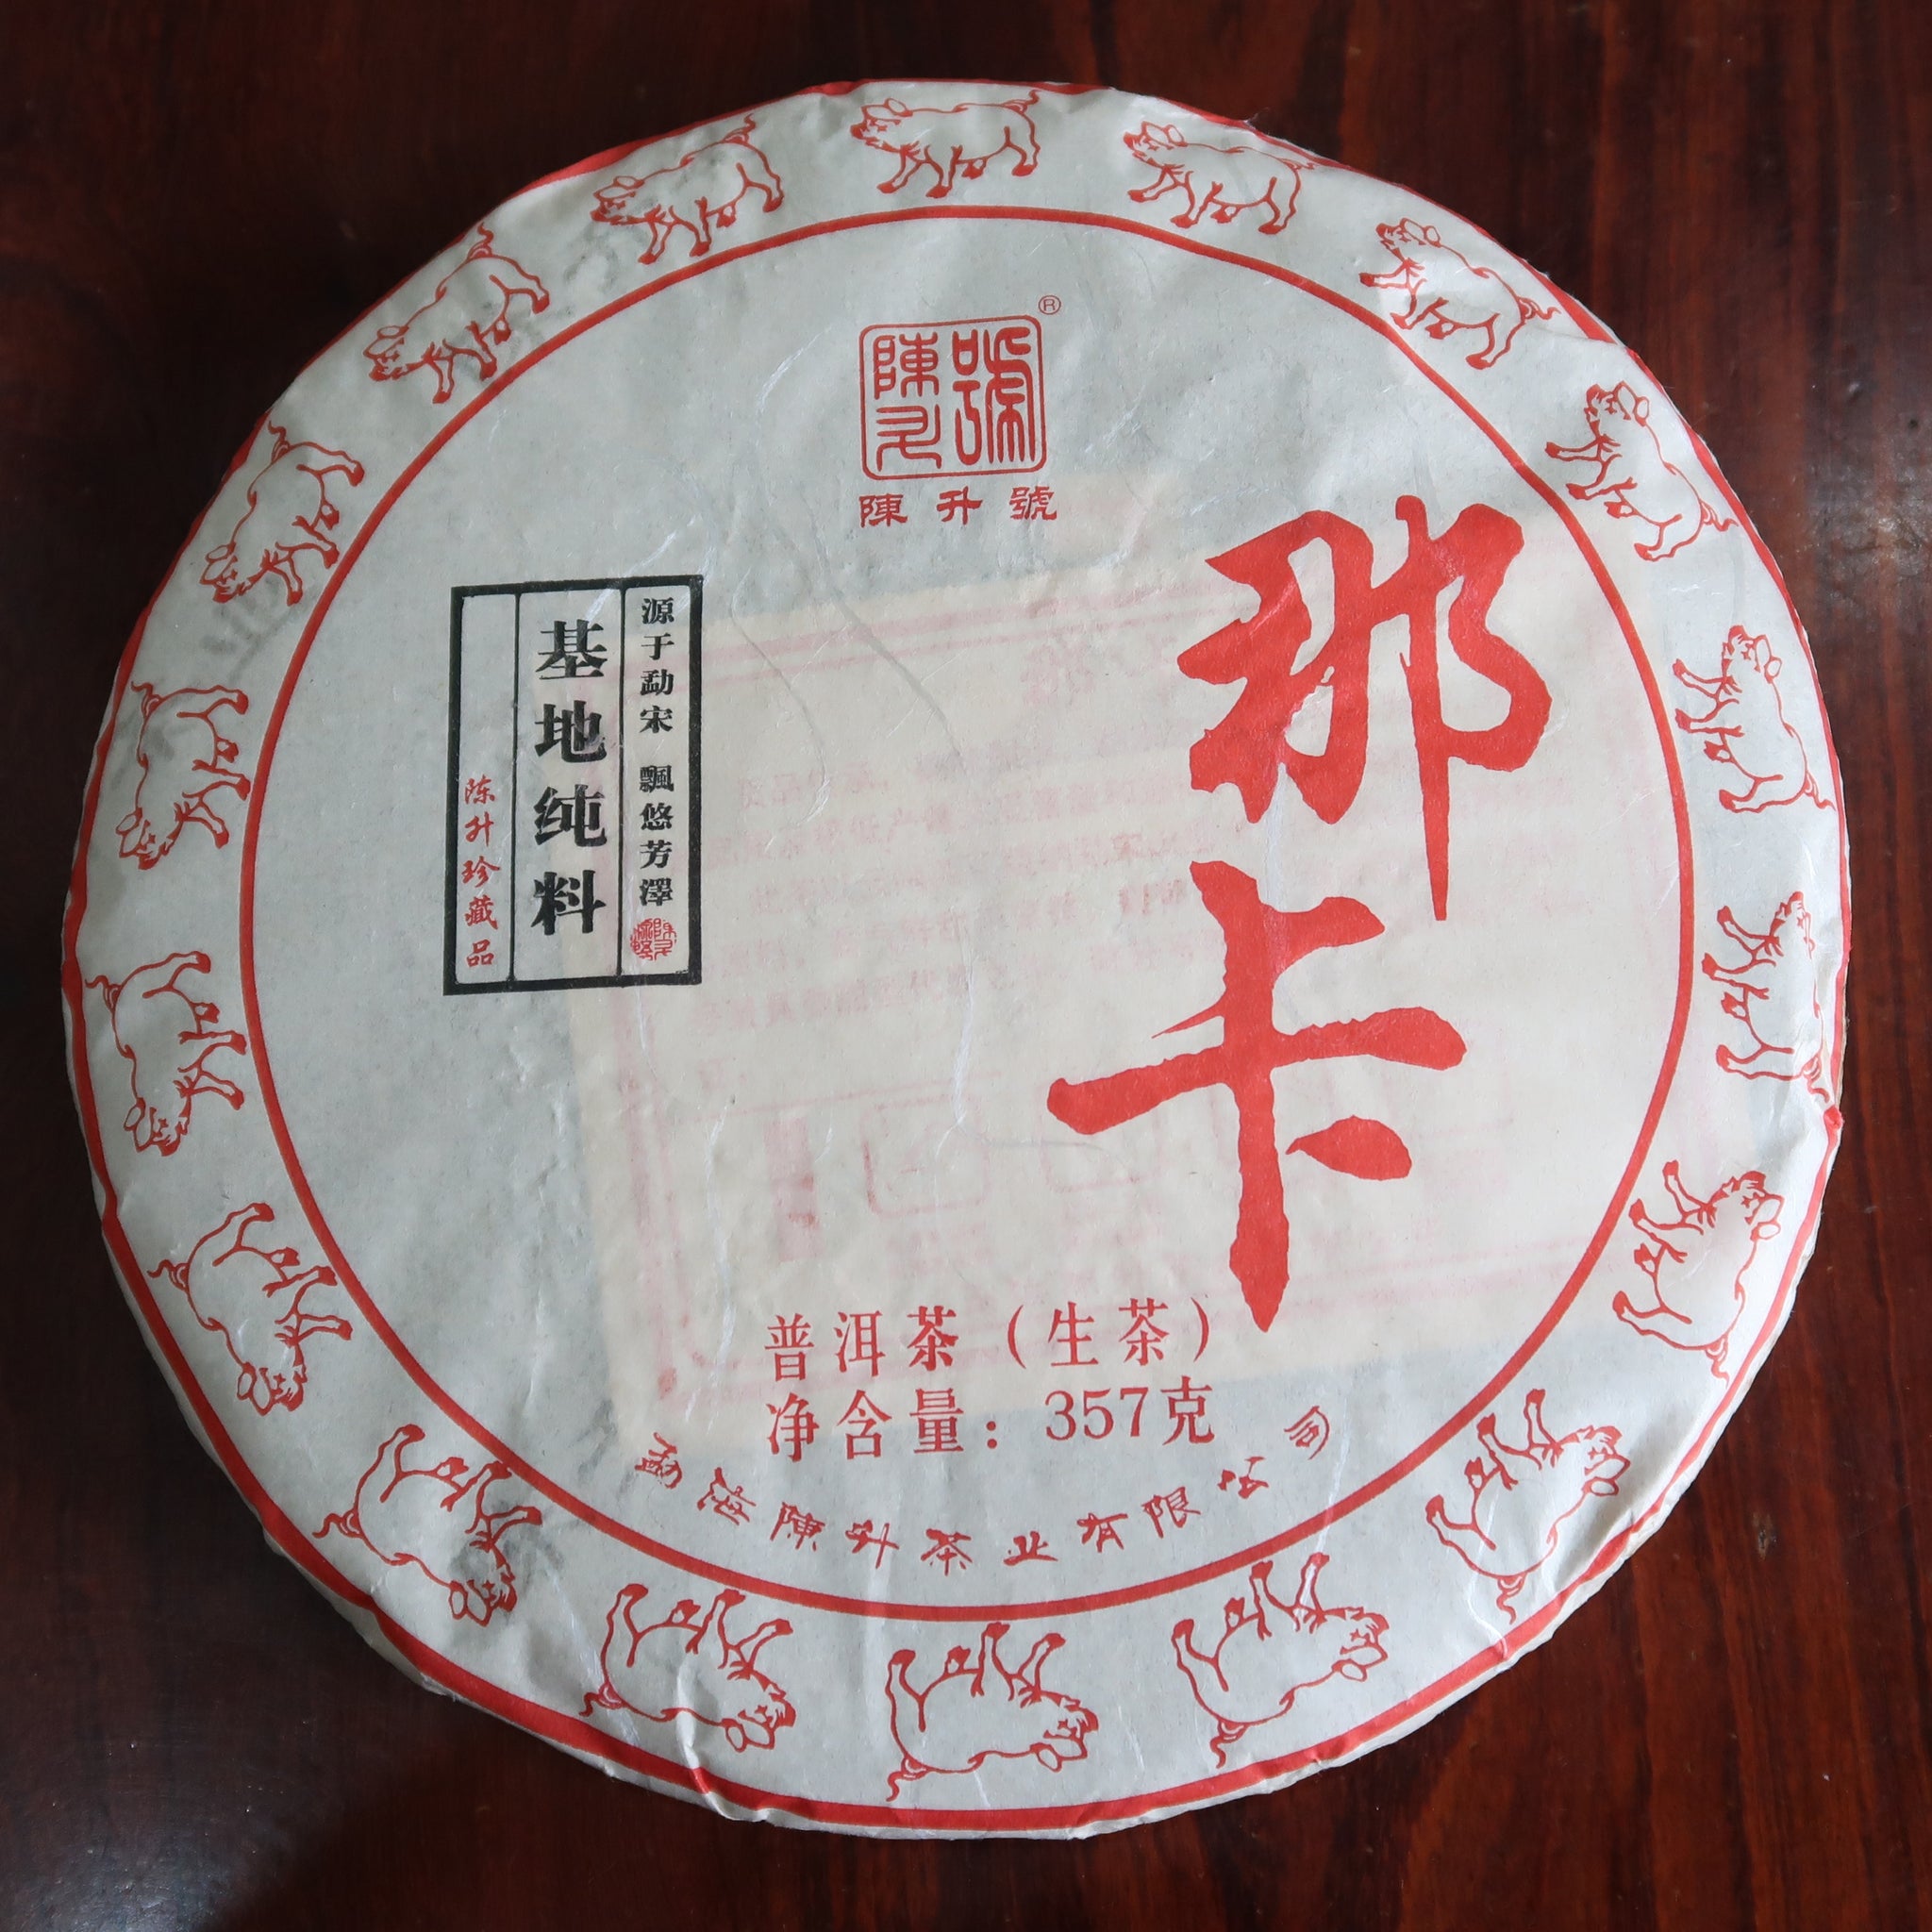 2019 Premium Chen Sheng Hao Naka Shan Raw Puerh Tea